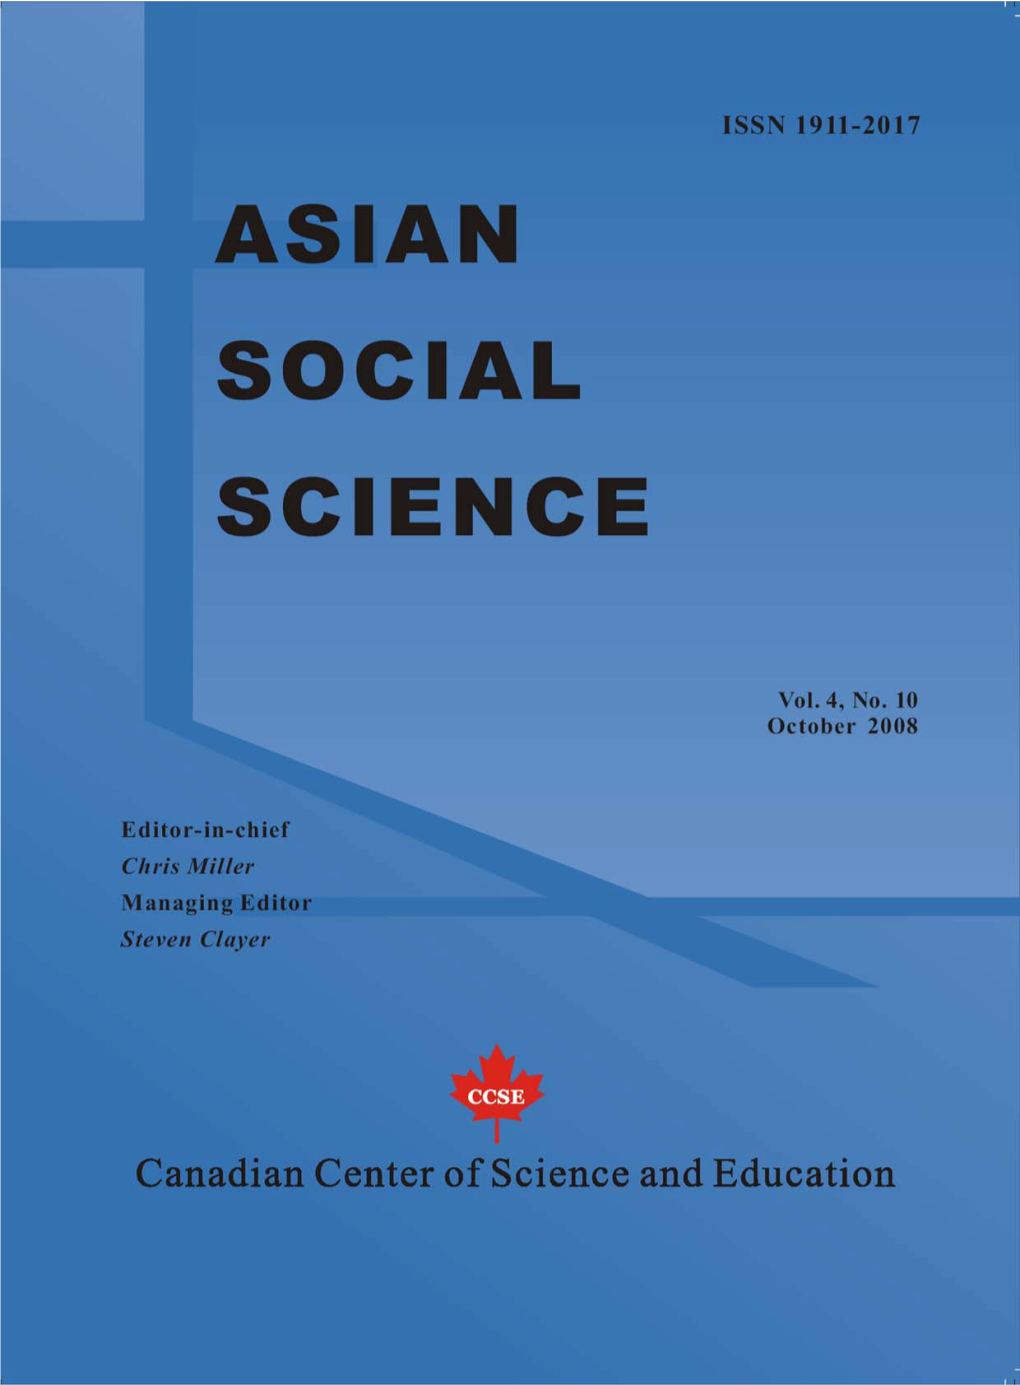 Asian Social Science, ISSN 1911-2017, Vol. 4, No. 2, October